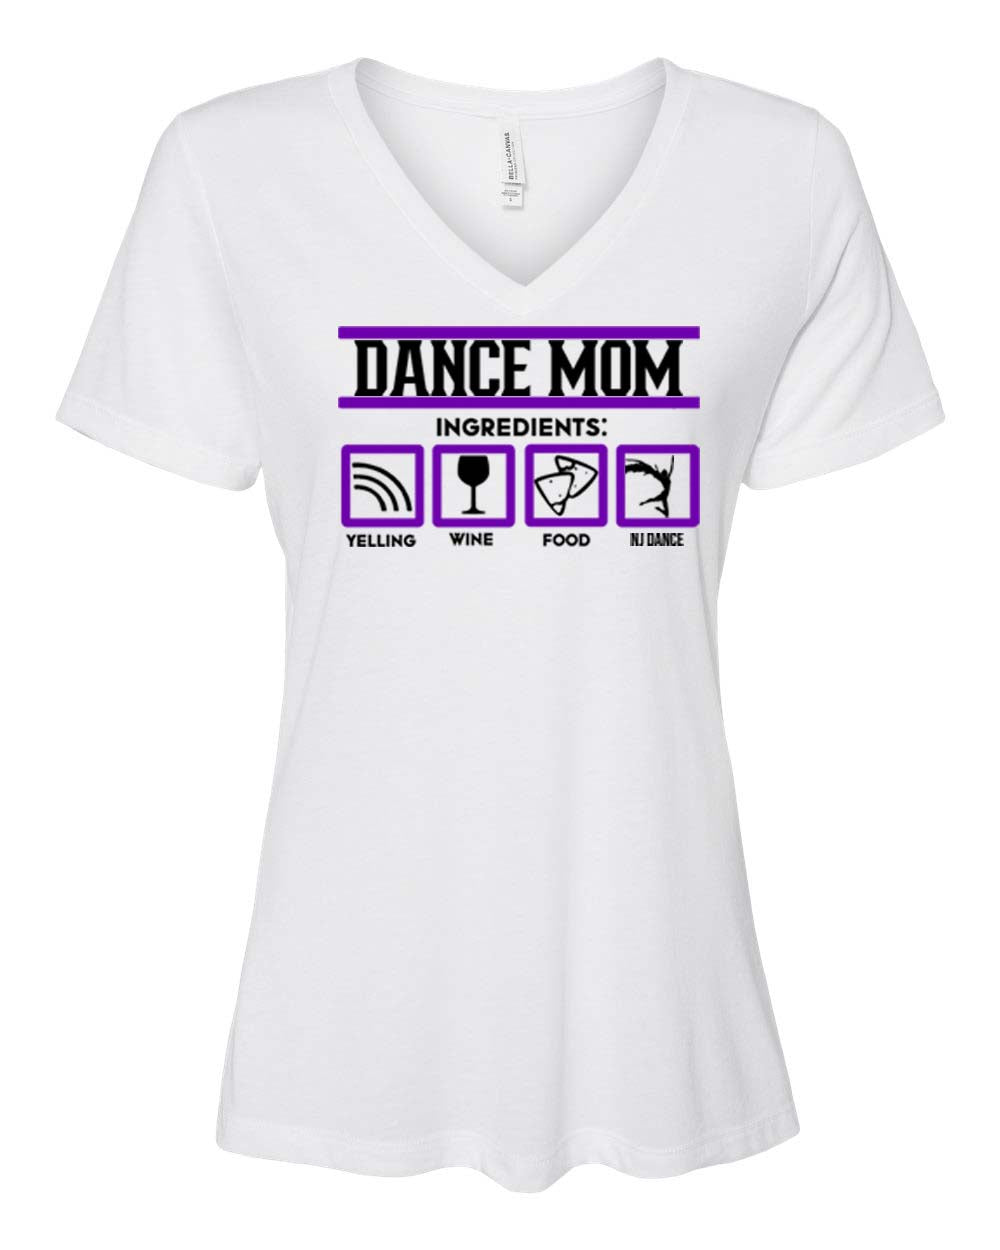 NJ Dance Design 8 V-neck T-Shirt